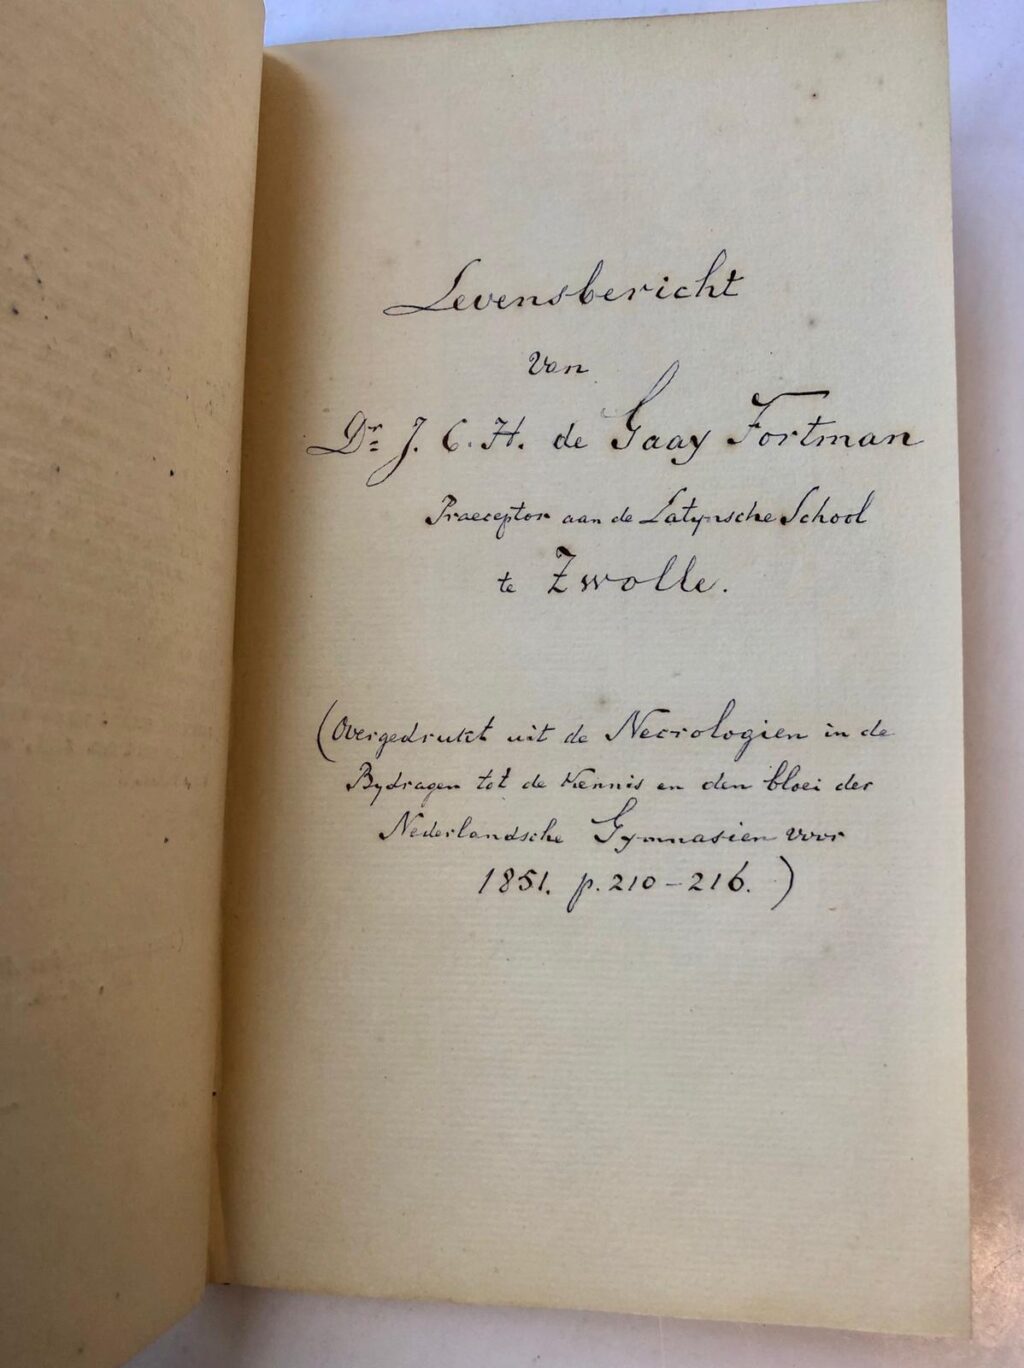 BAKE, SURINGAR Briefje van de broer van mr. A.J.J. Bake aan W.H.D. Suringar betreffende het levensbericht dat Suringar schreef over Bake in de Algemeene Konst- en Letterbode (1844), 1 p.